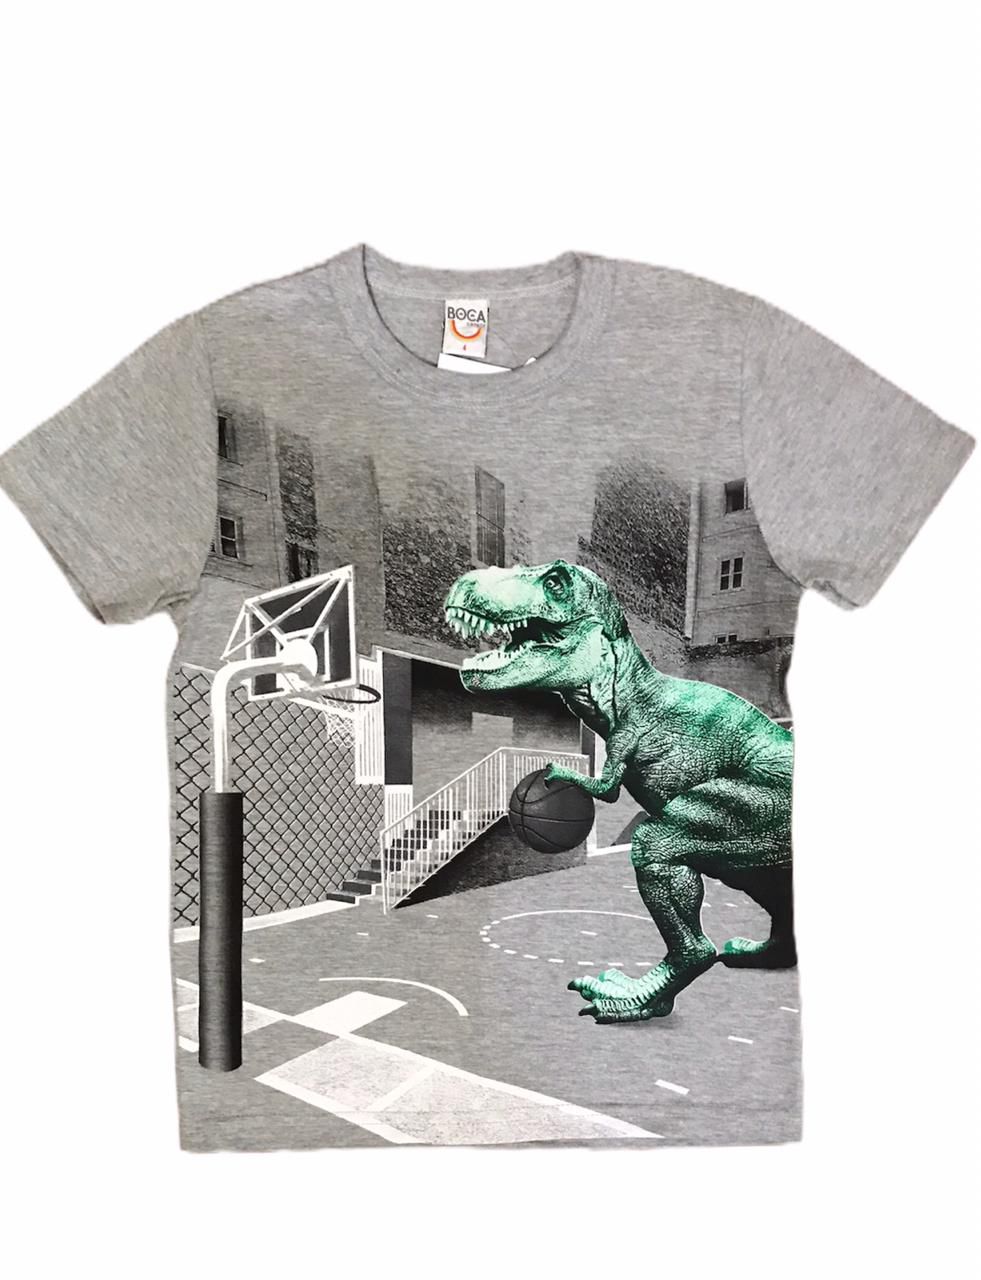 Camiseta Infantil Jogo Dinossauro Google 100% Algodão